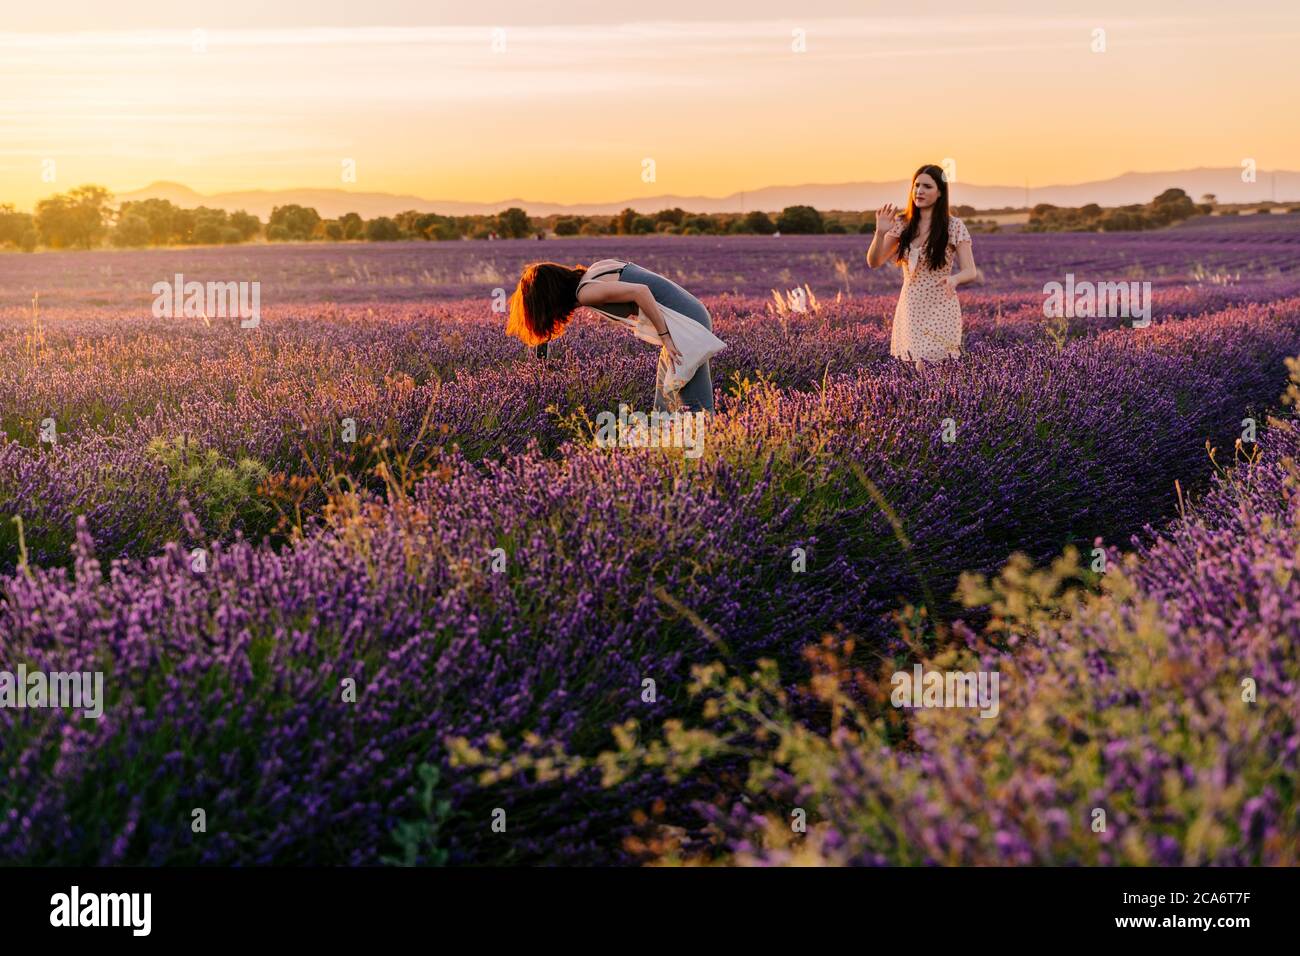 Deux amis s'amusent et prennent des photos avec leur téléphone mobile dans un champ de laveurs en fleurs, pendant le coucher du soleil. Vacances dans la nature, Espagne Banque D'Images